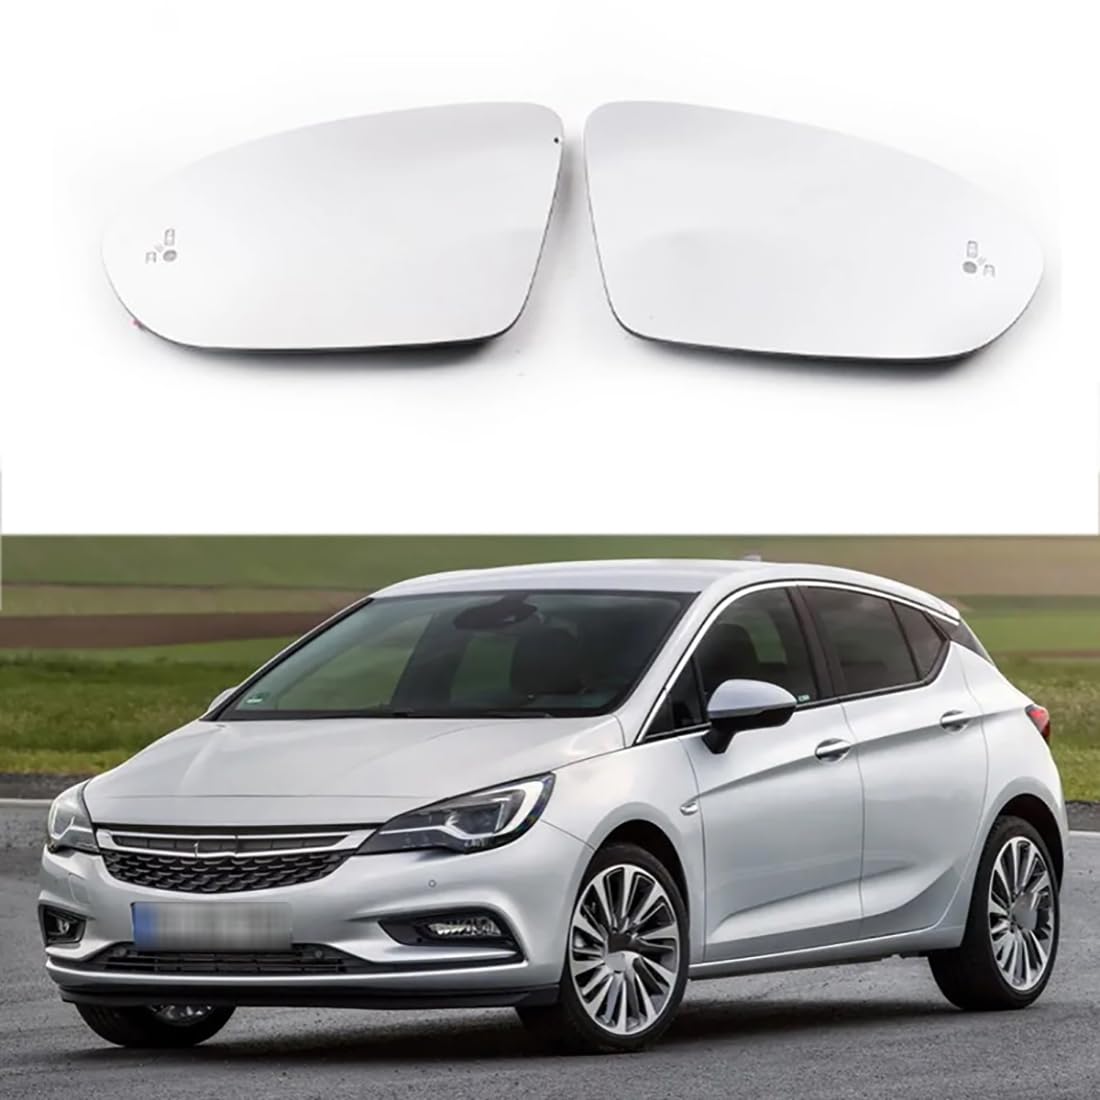 Austauschbarer Auto-Außenspiegel aus Beheizbarem Glas für Opel Astra K 2015-2019,beheizbarer Rückspiegel für Fahrer und Beifahrer Links/rechts,B-Right von YujieNB